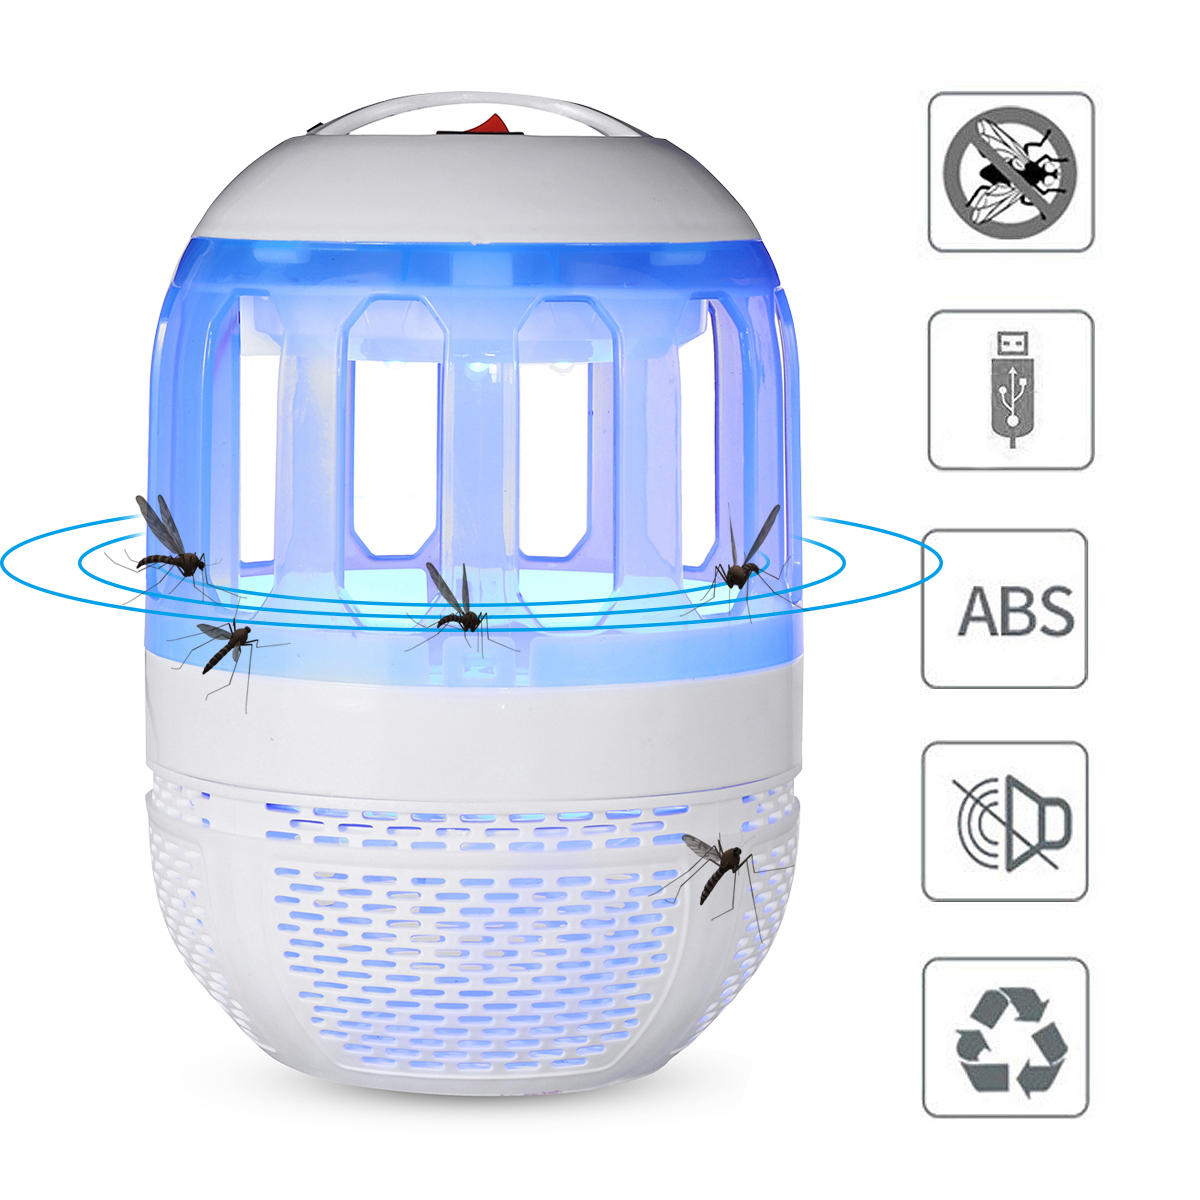 2W Elektronische Moskito-Mörder-Lampen-USB-Insekten-Mörder-Lampen-Birnen-Schädlings-Falle-Licht für das Kampieren